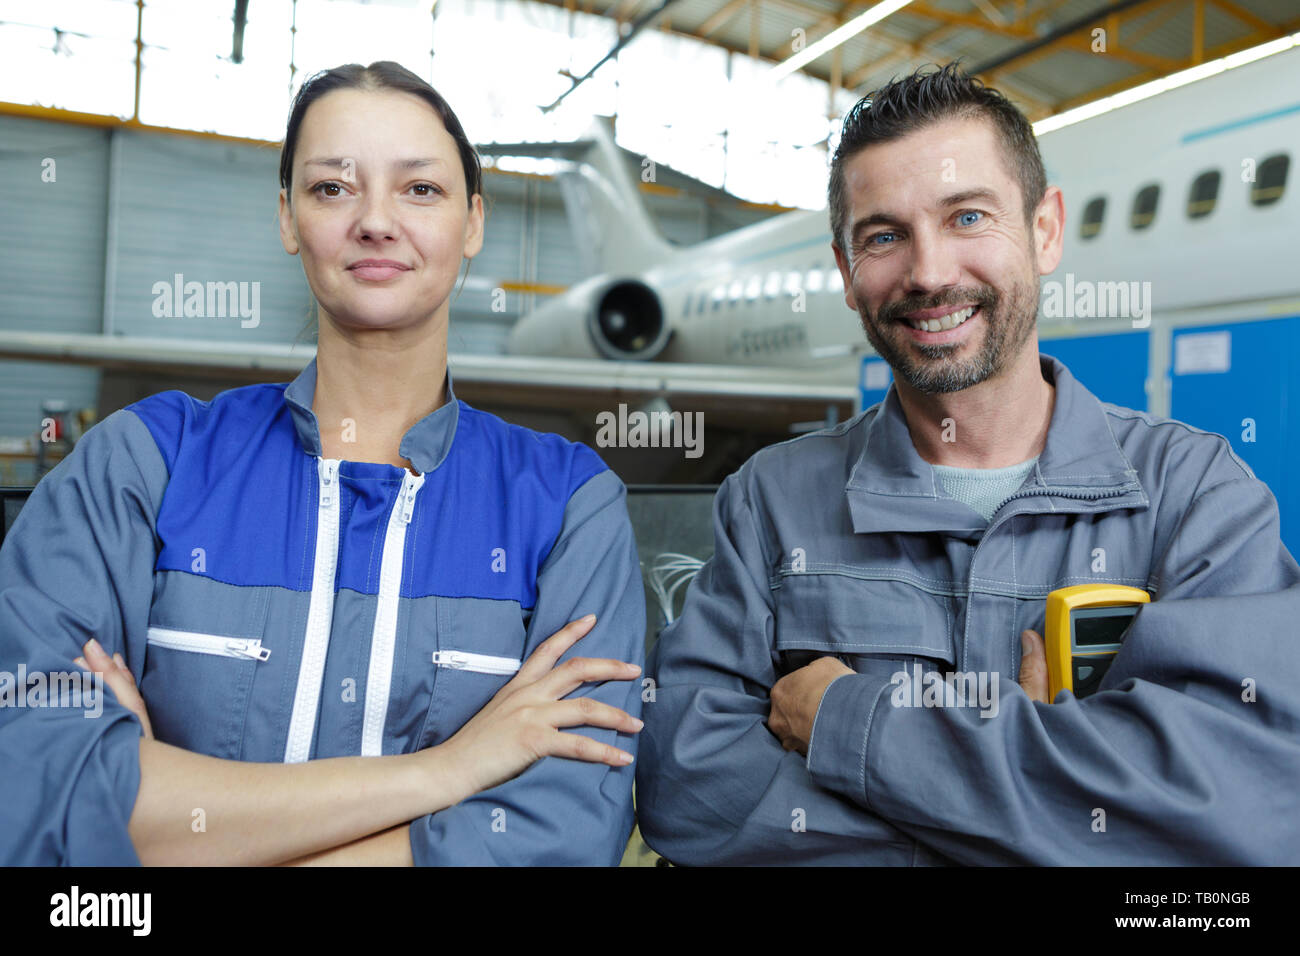 Technicien de maintenance d'aéronefs posing Banque D'Images